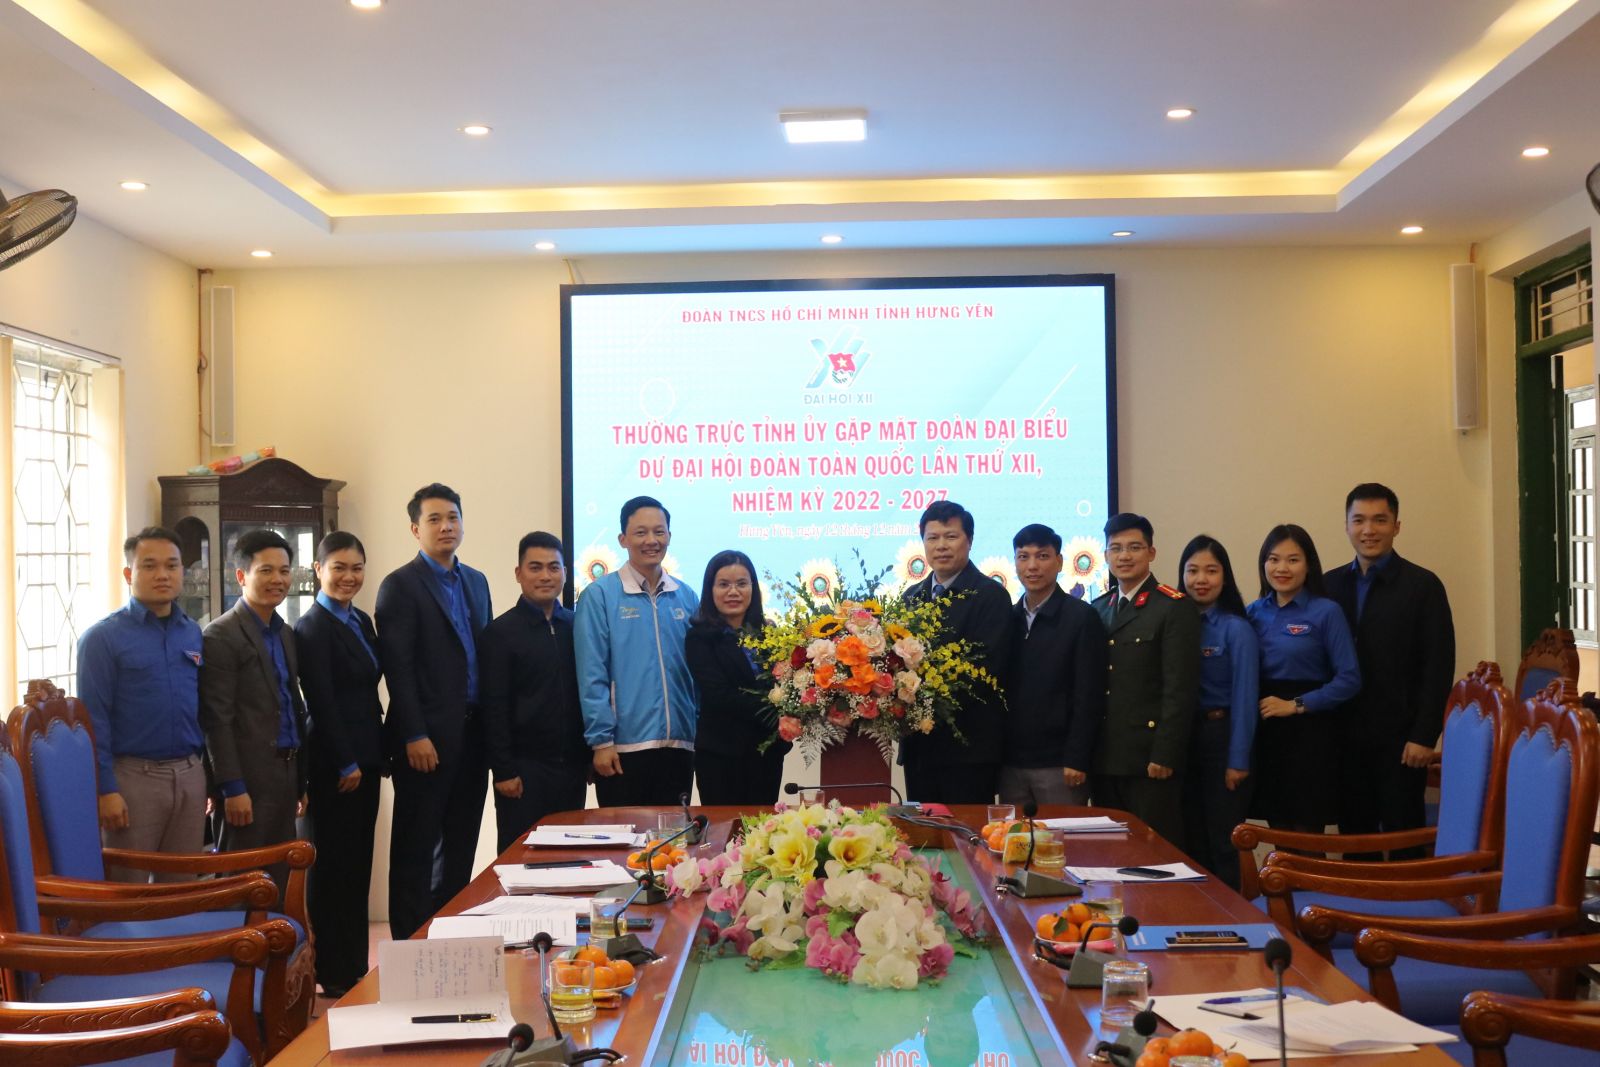 Thường trực Tỉnh ủy gặp mặt đoàn đại biểu dự Đại hội đại biểu toàn quốc Đoàn TNCS Hồ Chí Minh lần thứ XII, nhiệm kỳ 2022 – 2027